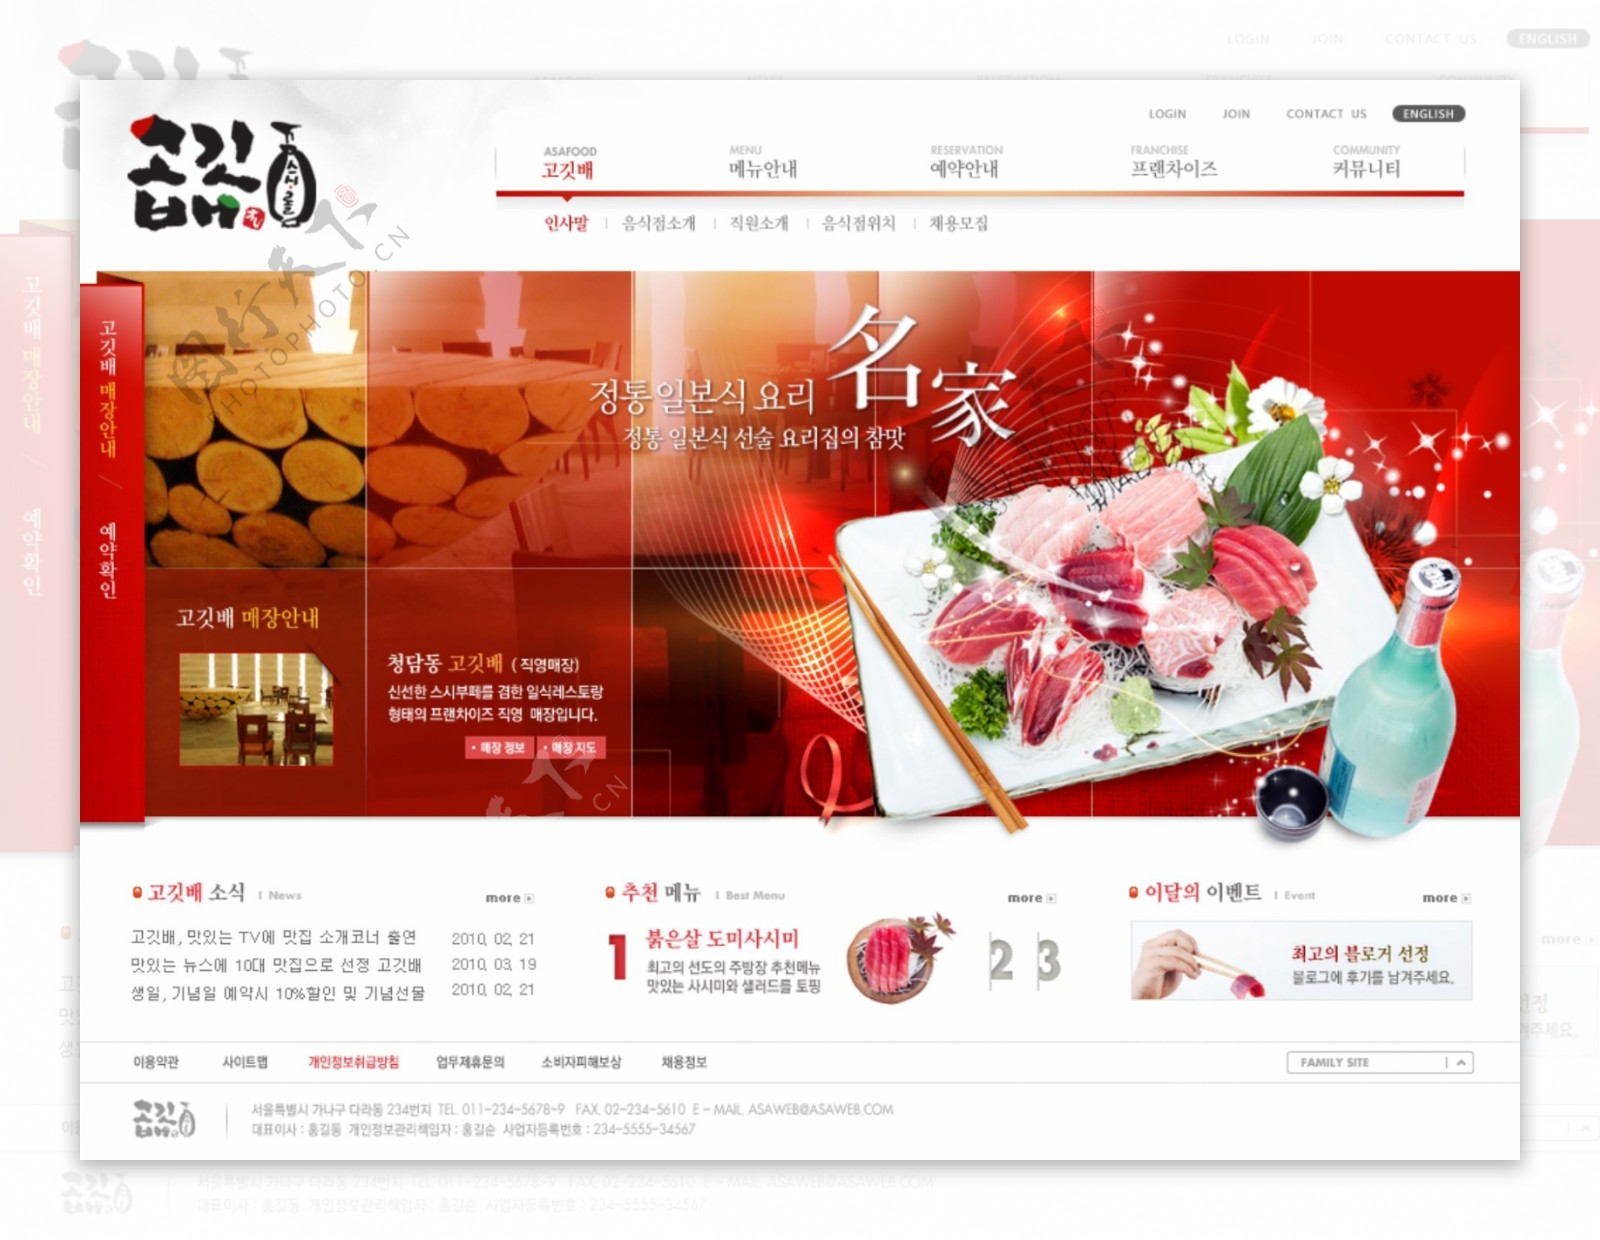 高档日式料理网站